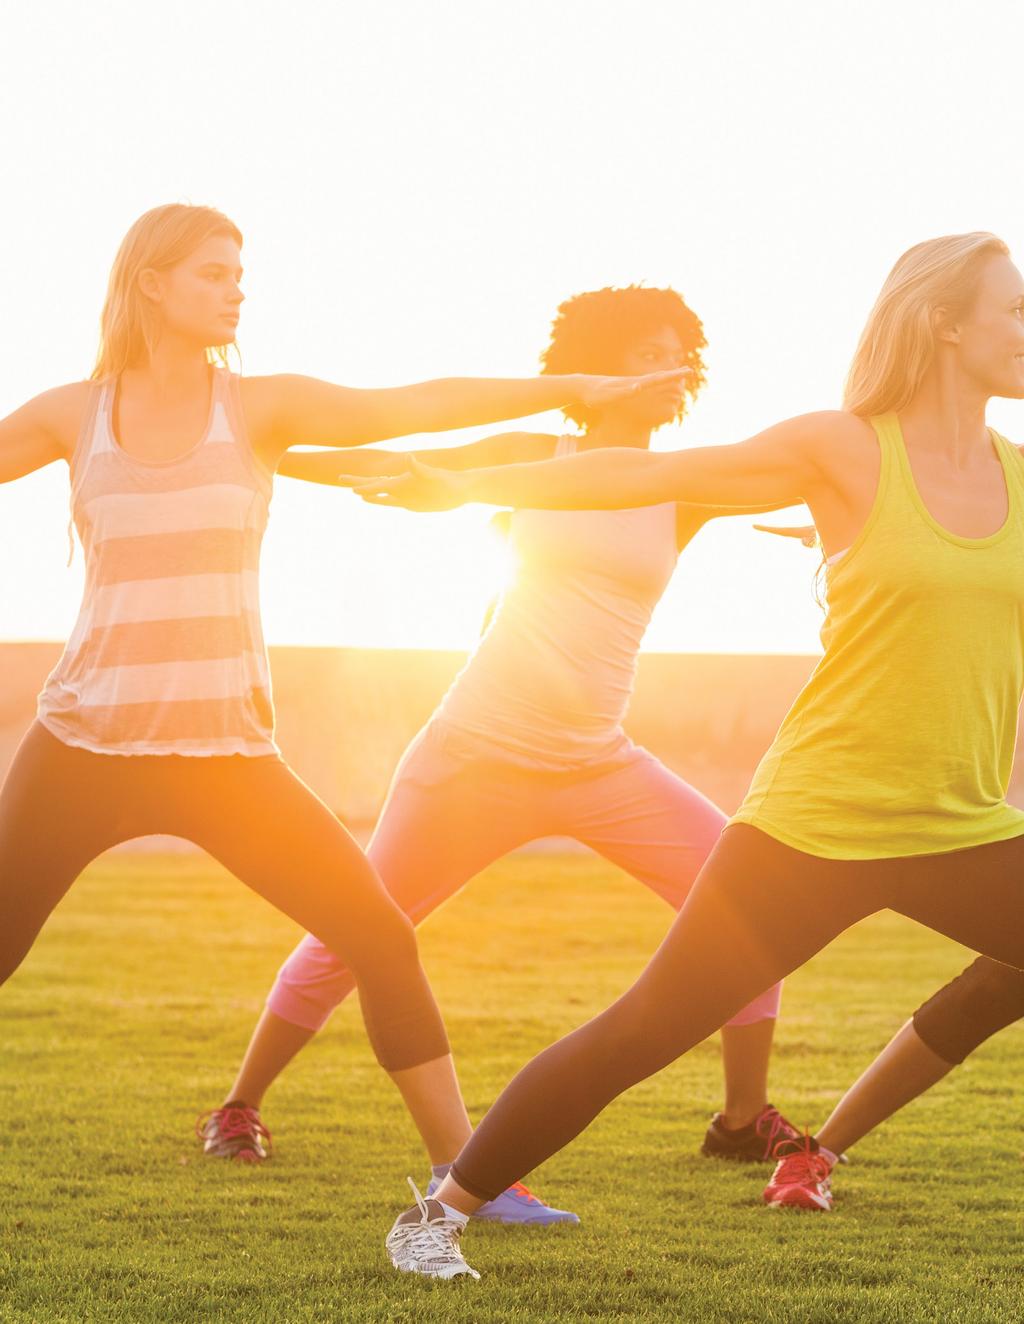 TÄGLICHE WELLNESS-GEWOHNHEITEN Mindestens 30 Minuten täglich körperliche Bewegung Dehnen Sie sich oder praktizieren Sie Yoga, um Ihre Flexibilität zu erhöhen DEEP BLUE Massieren Sie das Öl an den